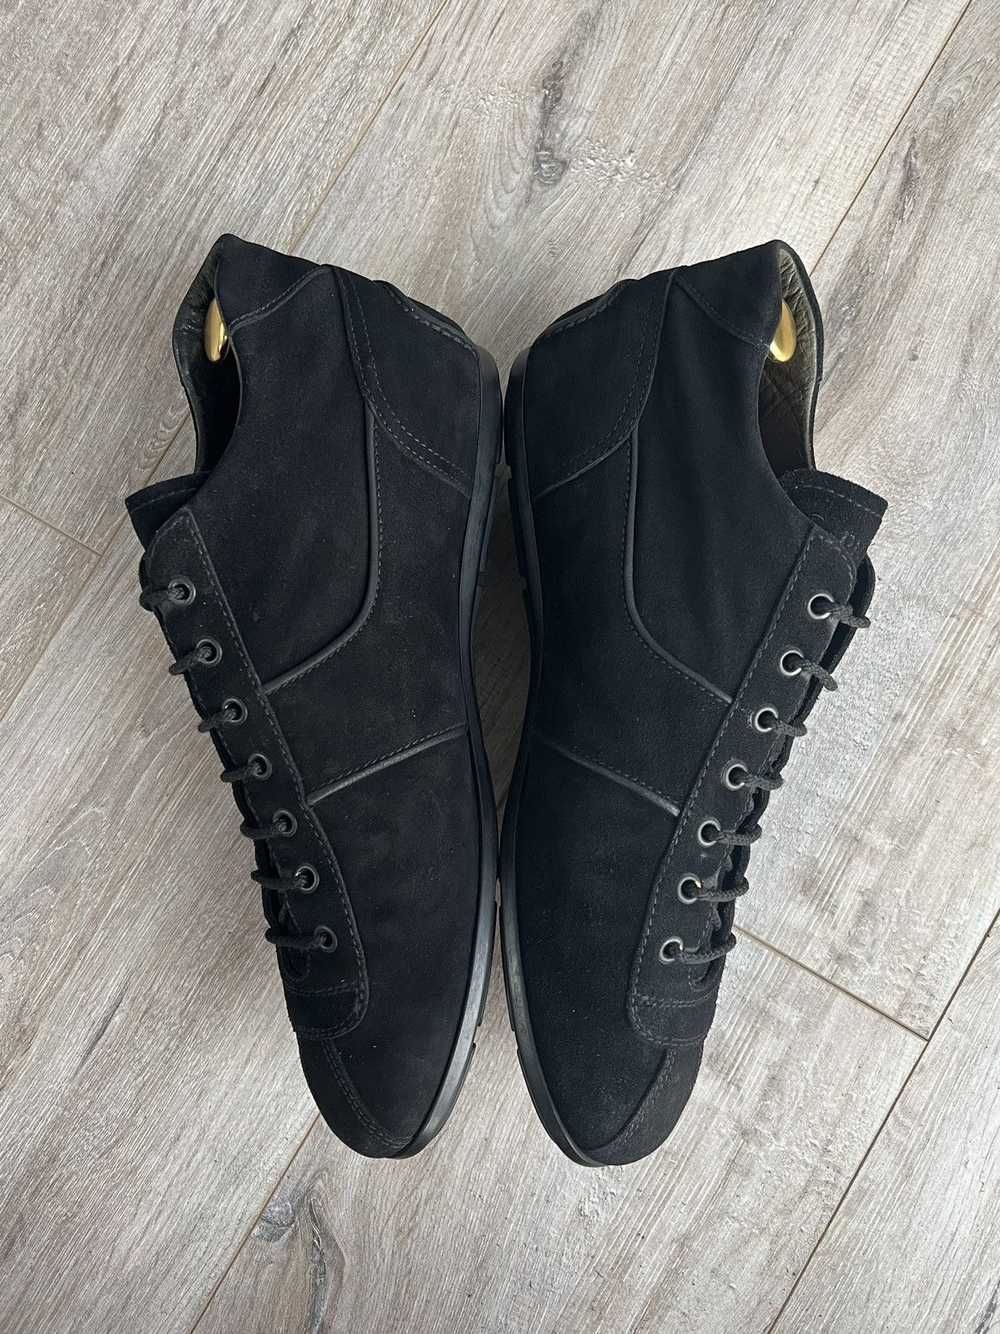 Prada PRADA Sneakers Hi Top Black Leather Suede L… - image 10